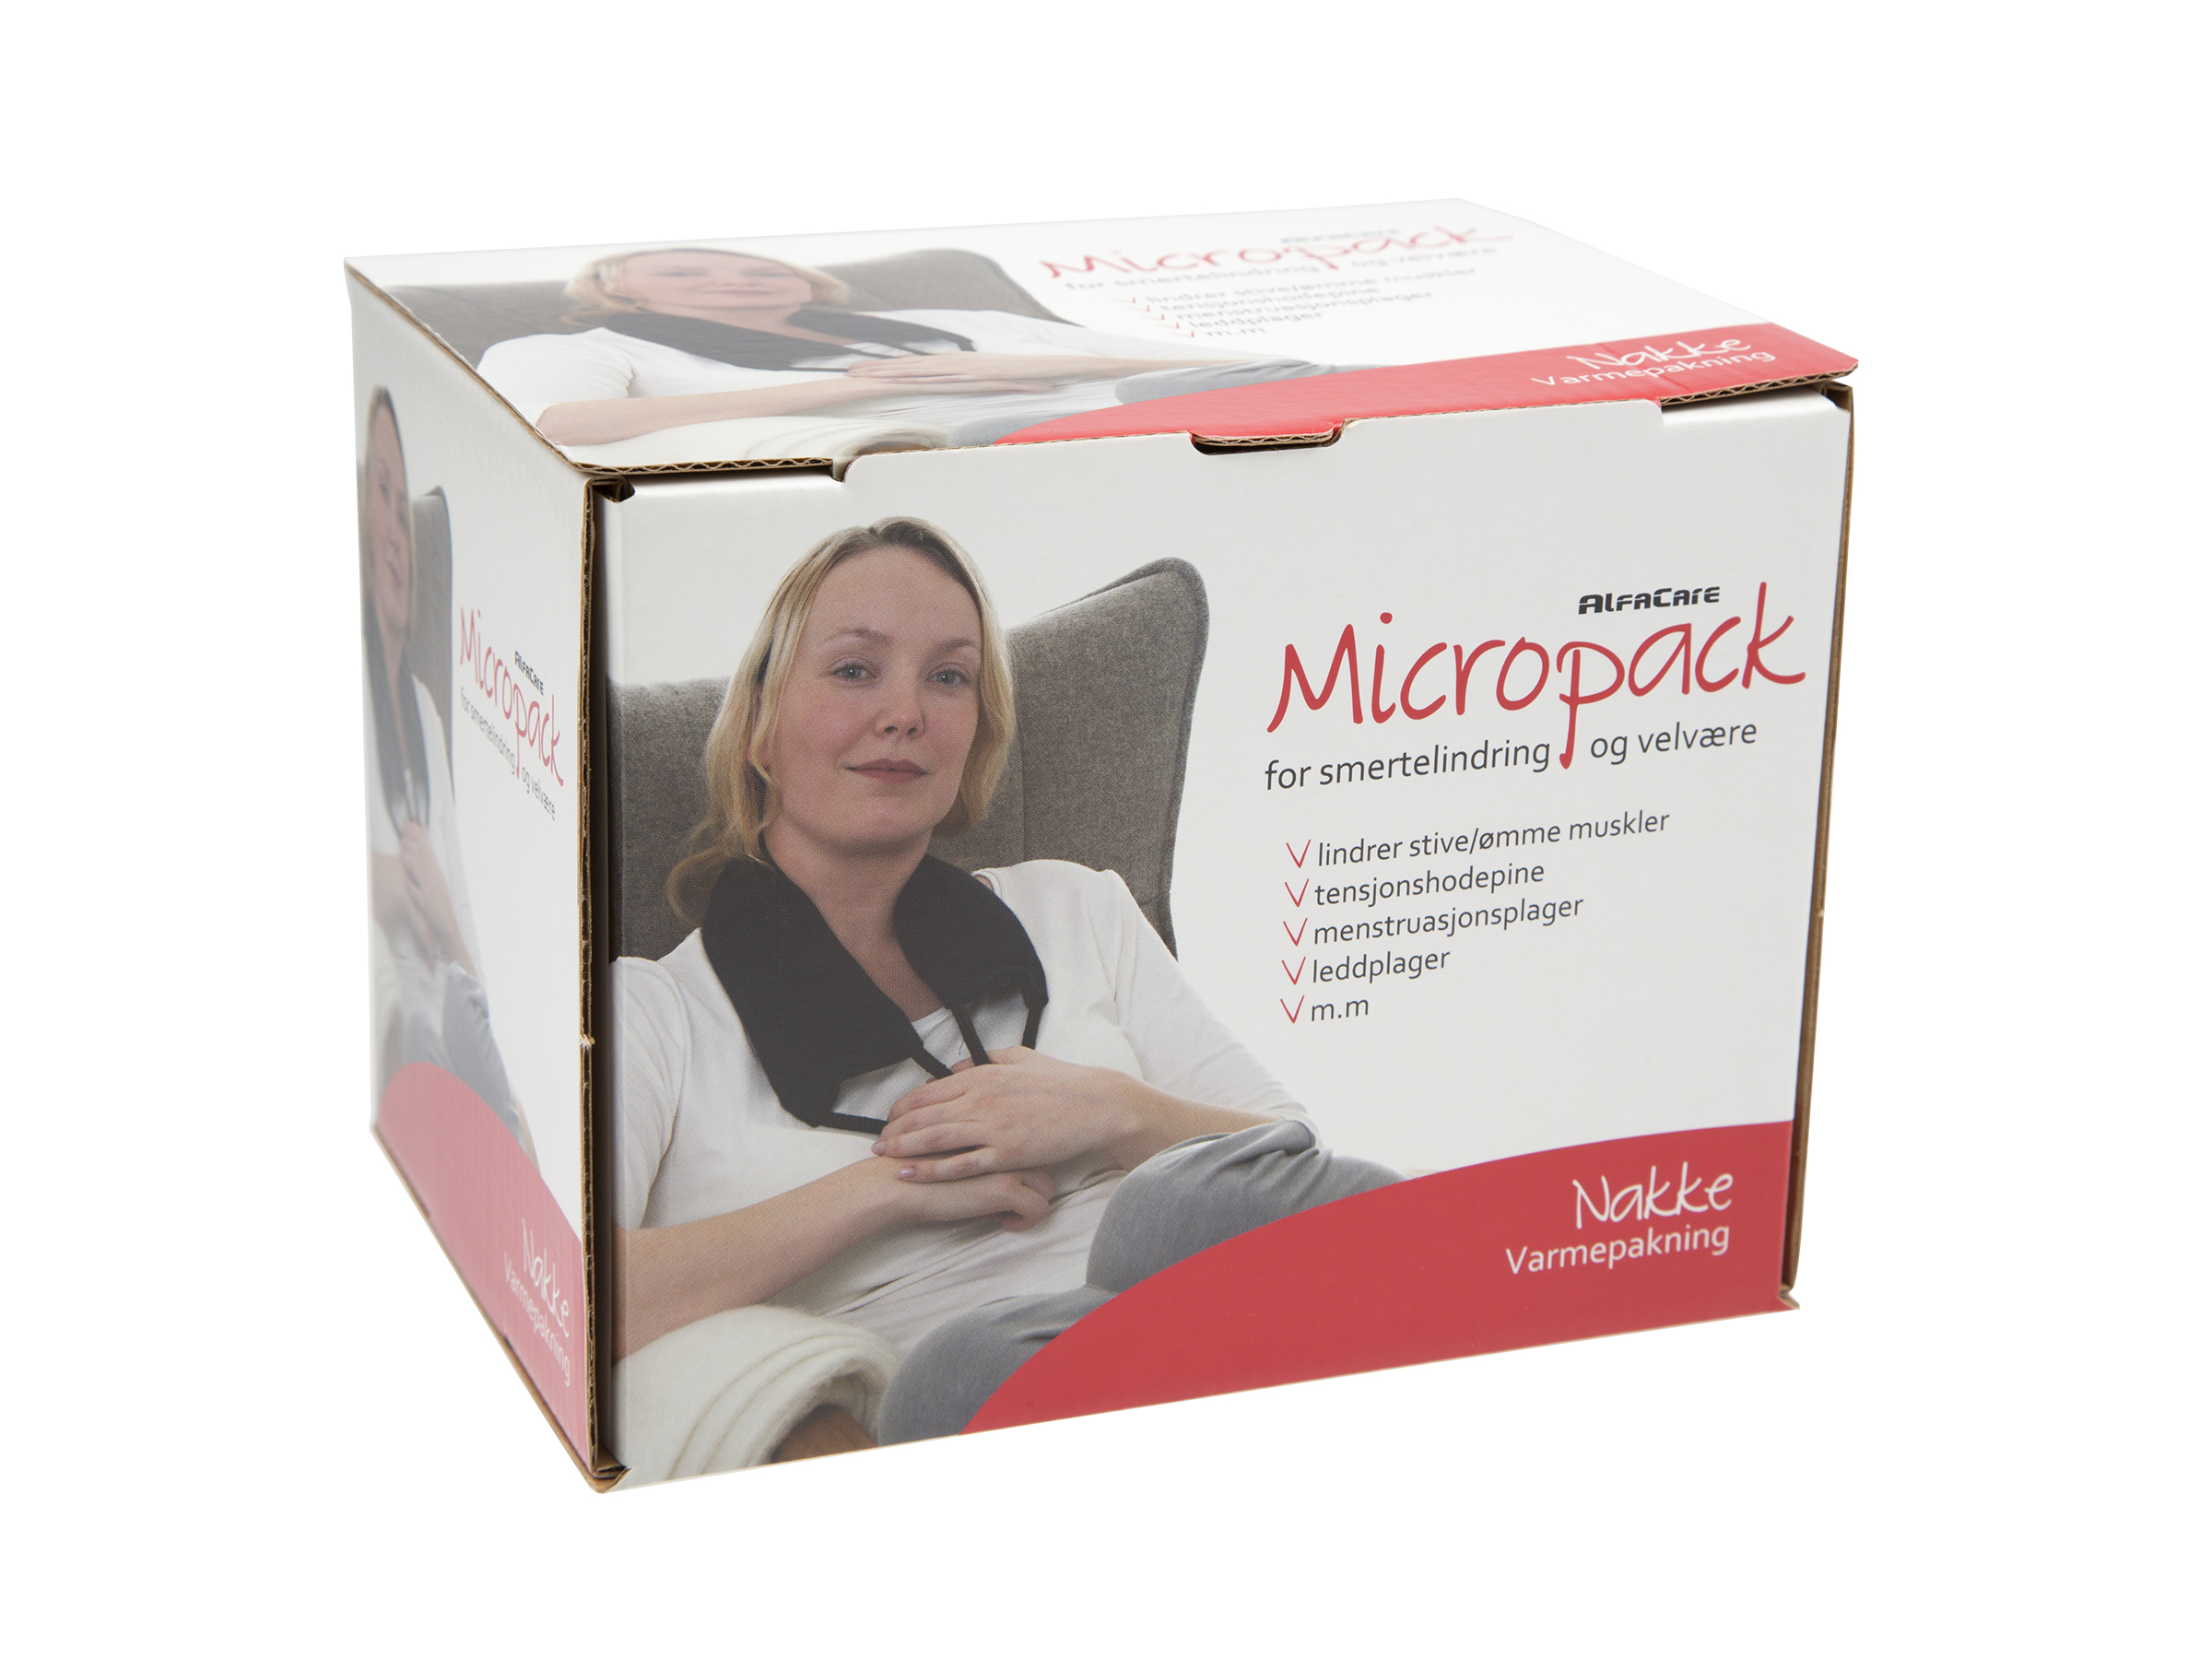 Alfacare Micropack nakke, 1 stk.